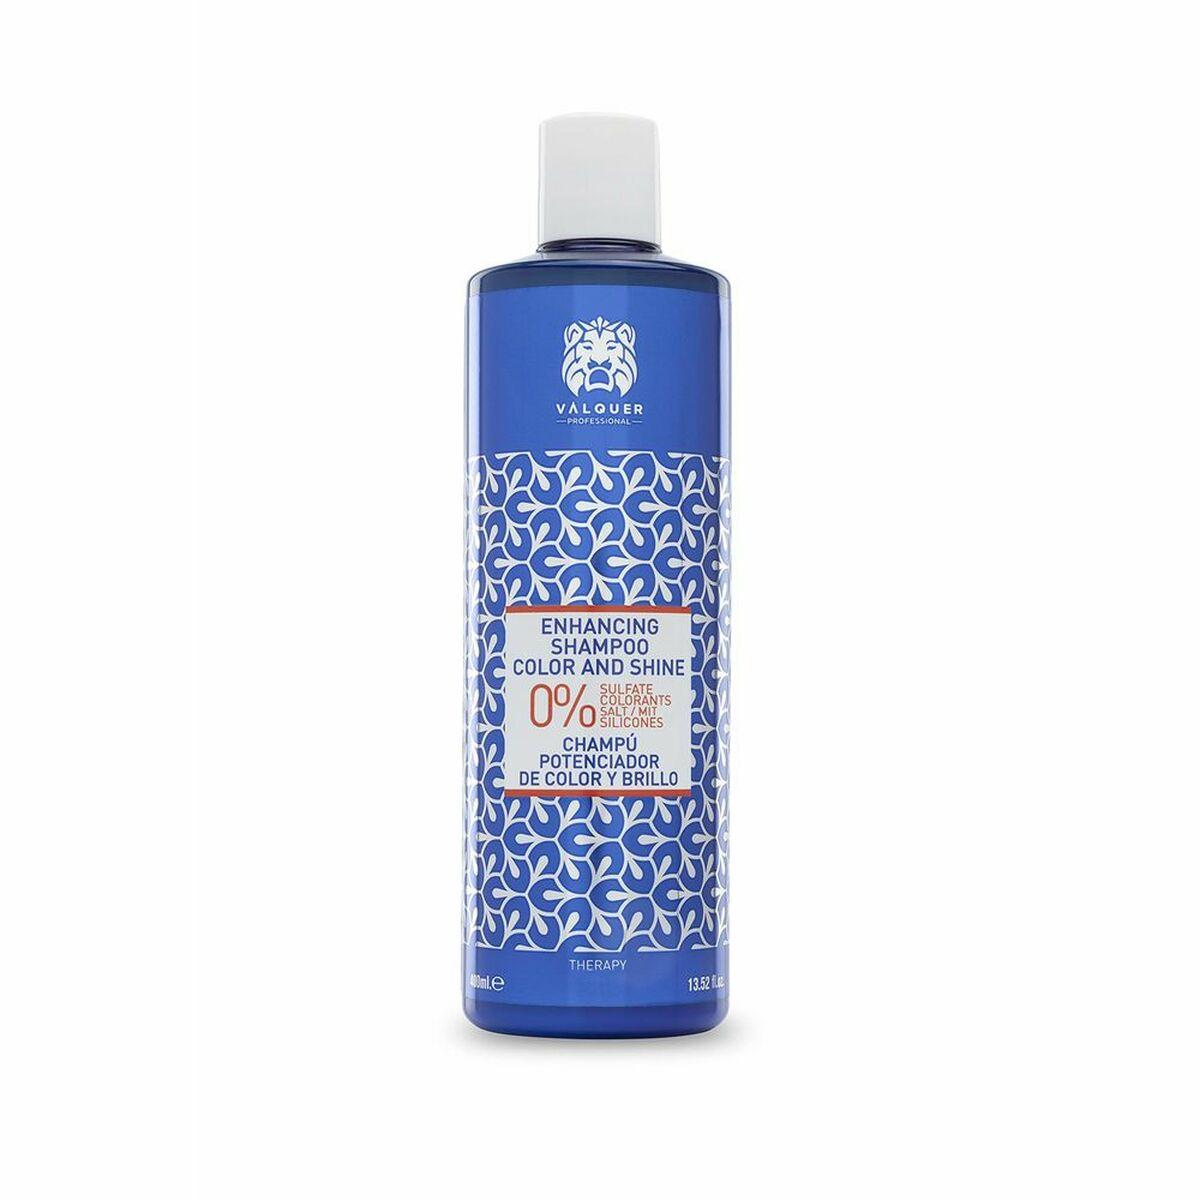 Billede af Shampoo til farvebevaring Zero Valquer Vlquer Premium 400 ml